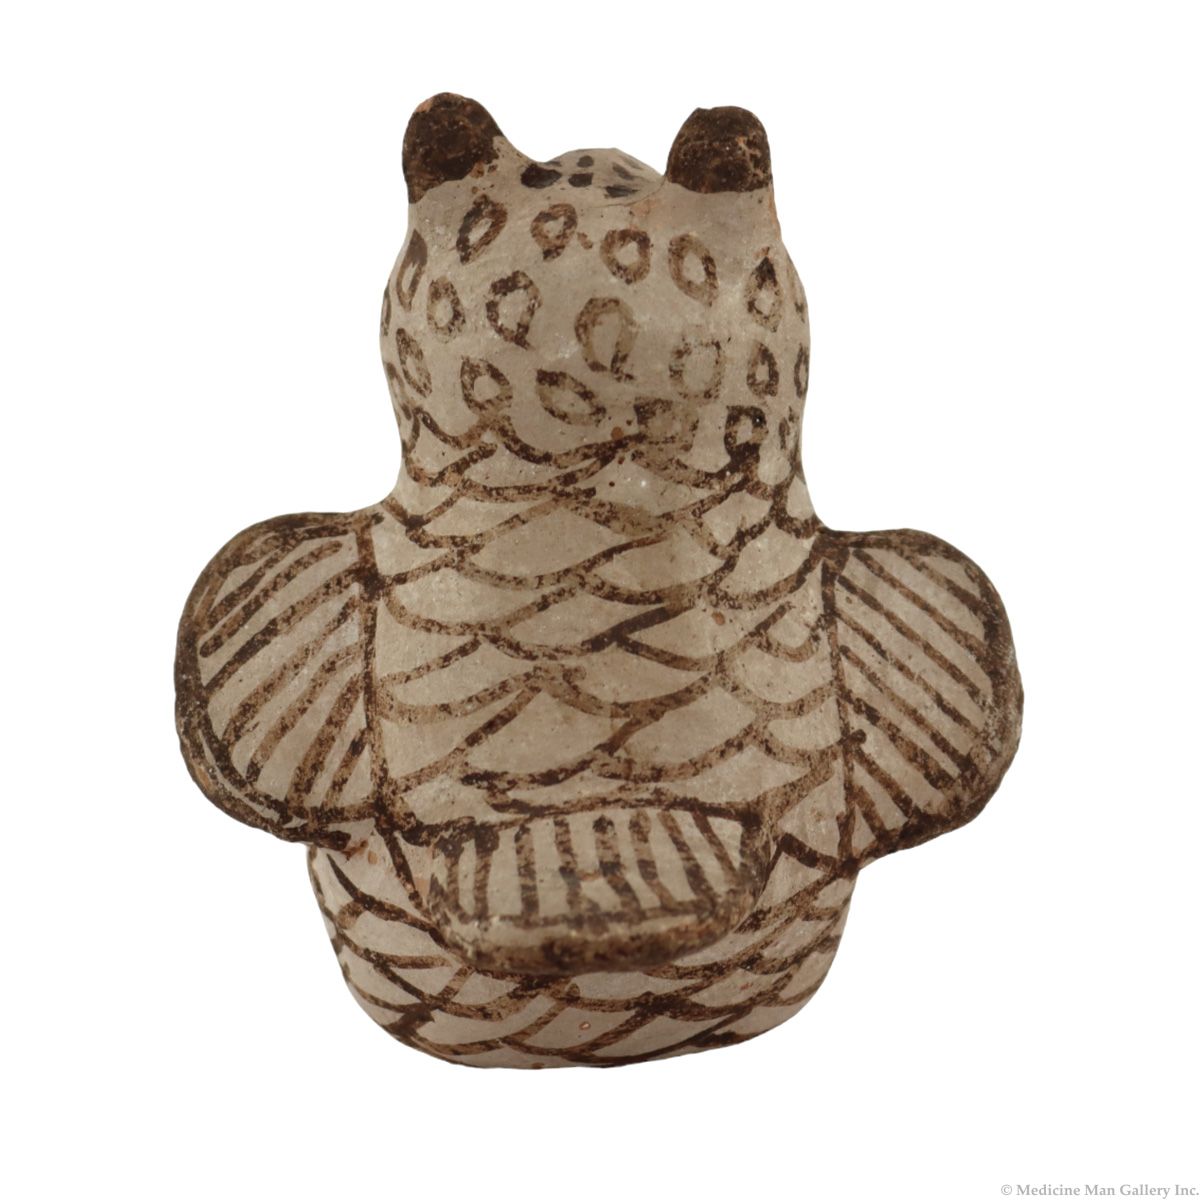 Zuni Polychrome Owl Figurine c. 1920-40s, 3.5" x 3.5" x 2.5" (P3734)